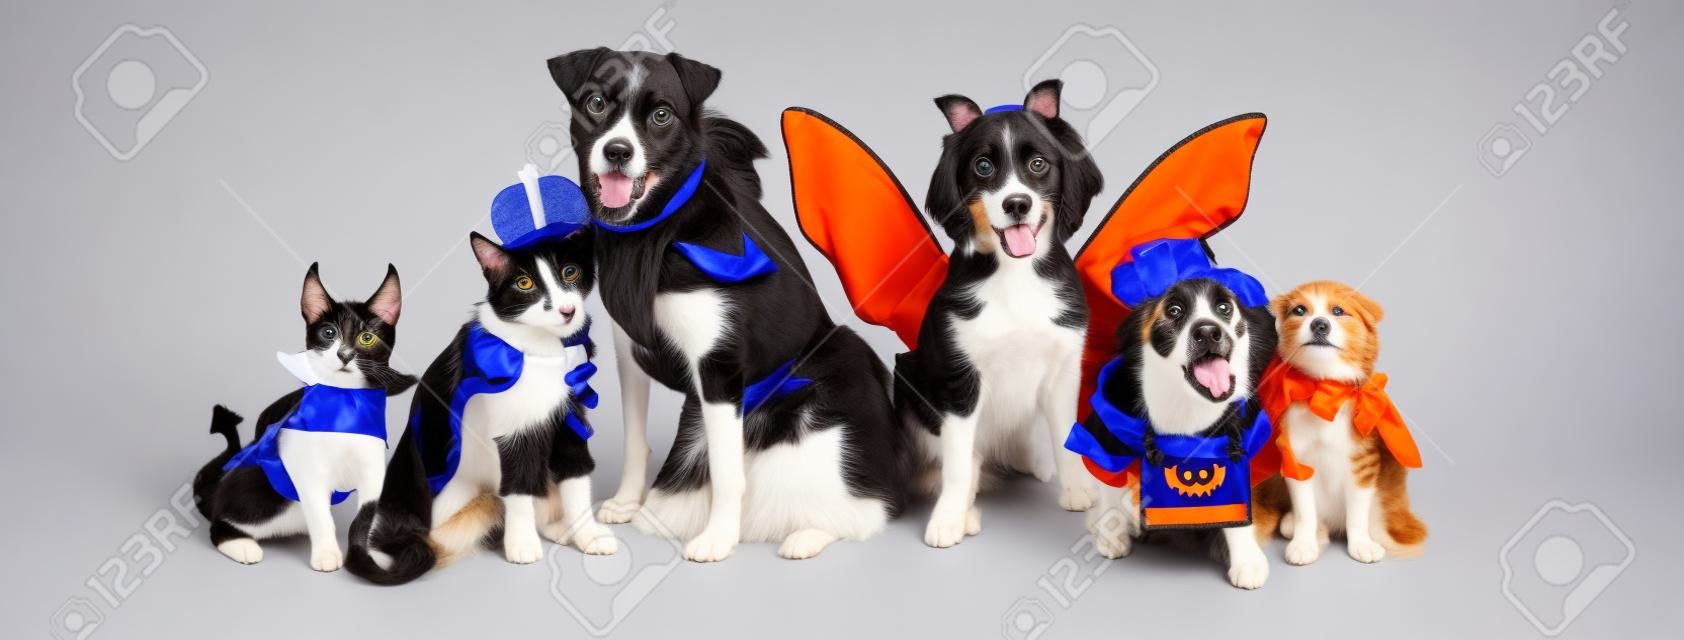 Linha de cães e gatos juntos vestindo trajes bonitos de Halloween. Banner da Web ou cabeçalho de mídia social no branco.